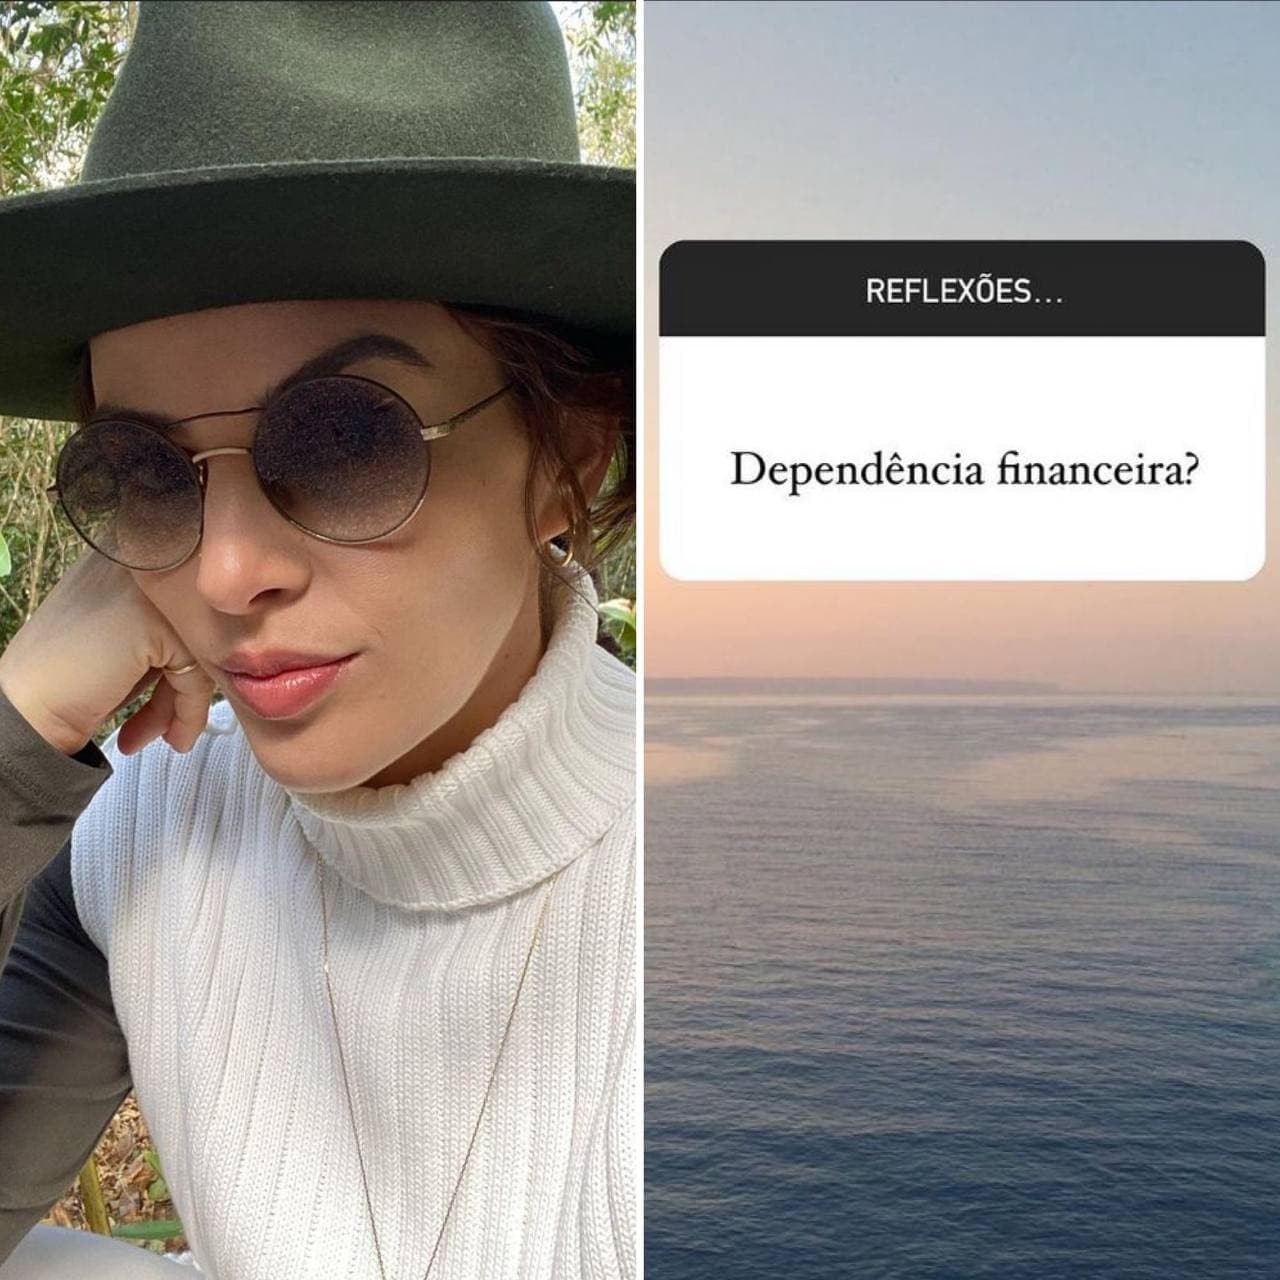 Mônica Benini usa o Instagram para desabafar sobre dependência financeira em texto reflexivo (Foto: Reprodução / Instagram)